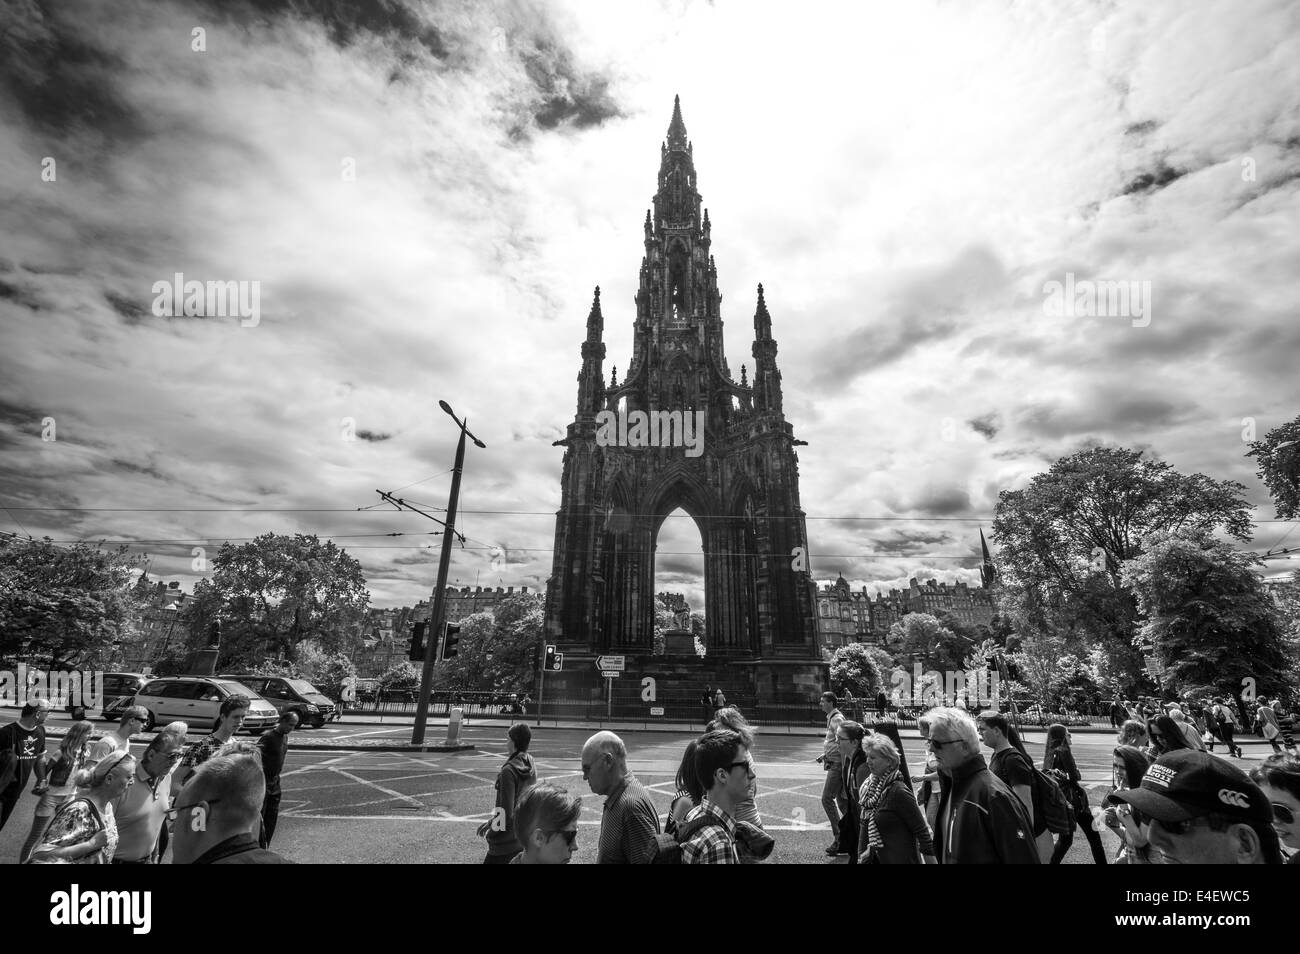 Street scene in front of Scott monument Edinburgh Stock Photo